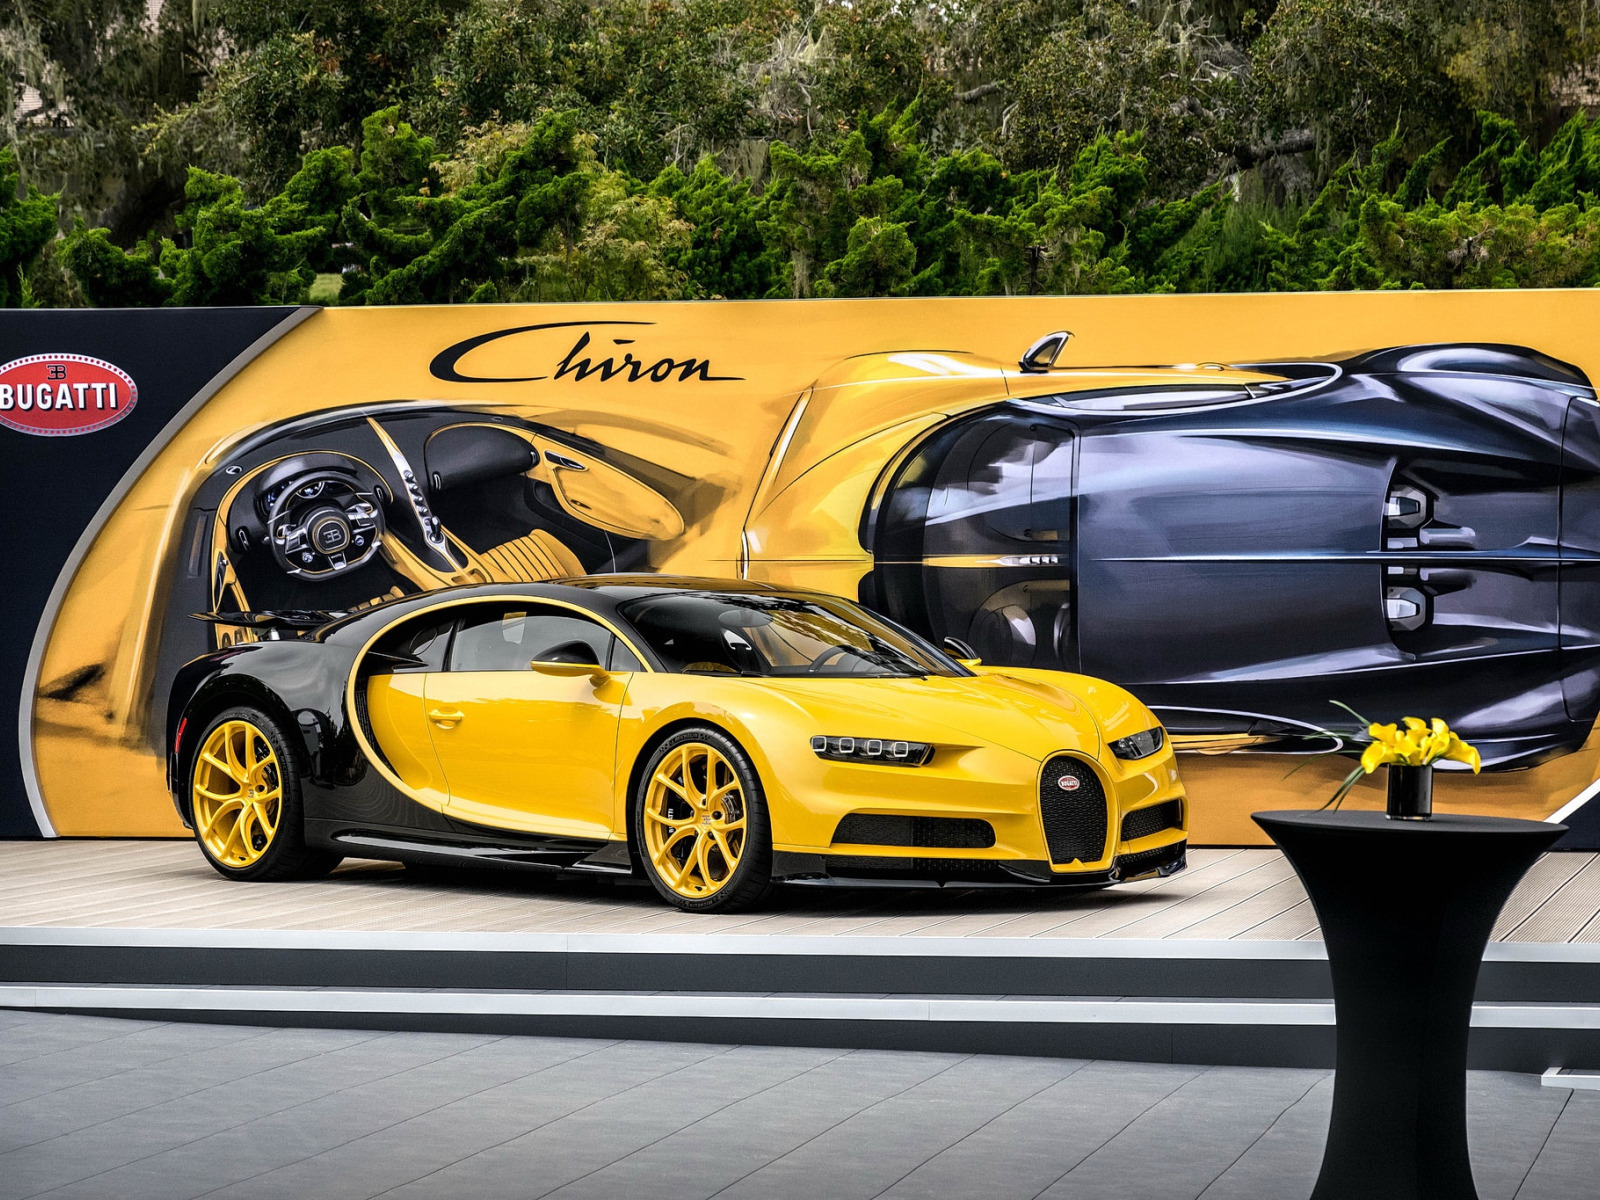 Bugatti black. Bugatti Chiron Yellow. Золотая Бугатти ЧИРОН. Бугатти Шерон Золотая. Bugatti Широн желтая.